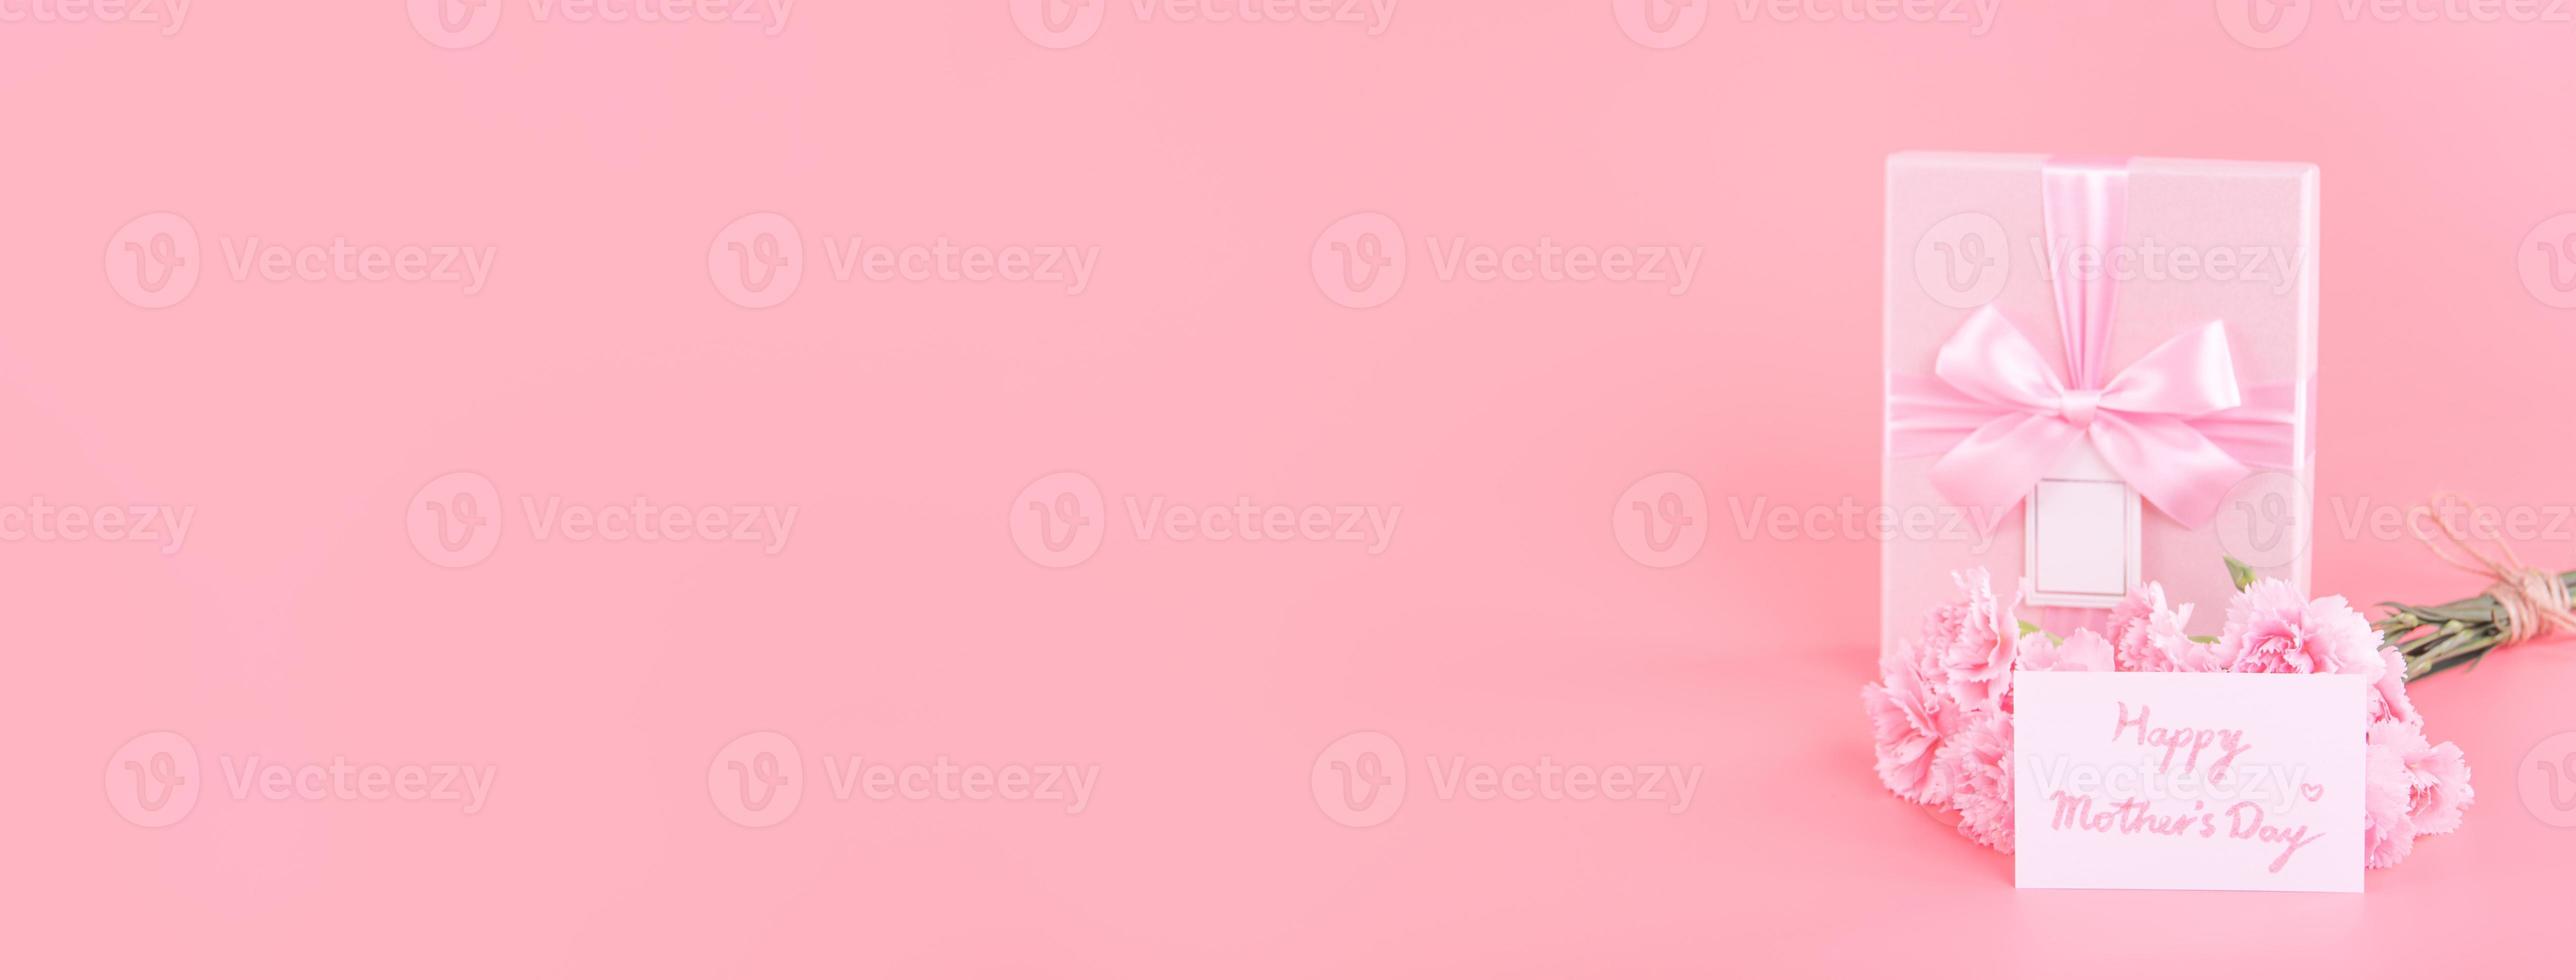 muttertag urlaubsgeschenk designkonzept, rosa nelkenblumenstrauß mit grußkarte, einzeln auf hellrosa hintergrund, kopierraum. foto